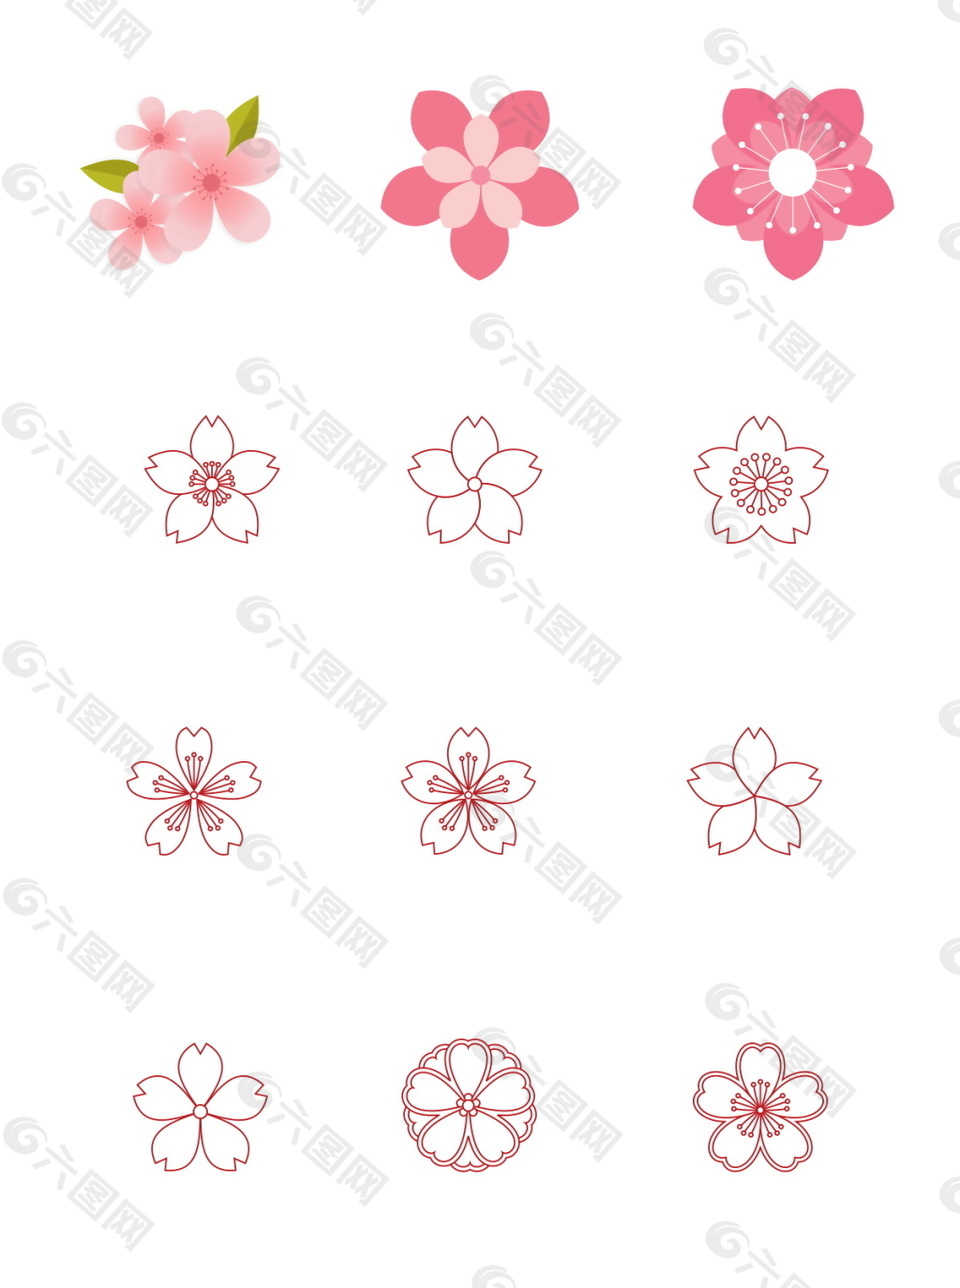 简约清新粉色线条手绘卡通花朵桃花元素